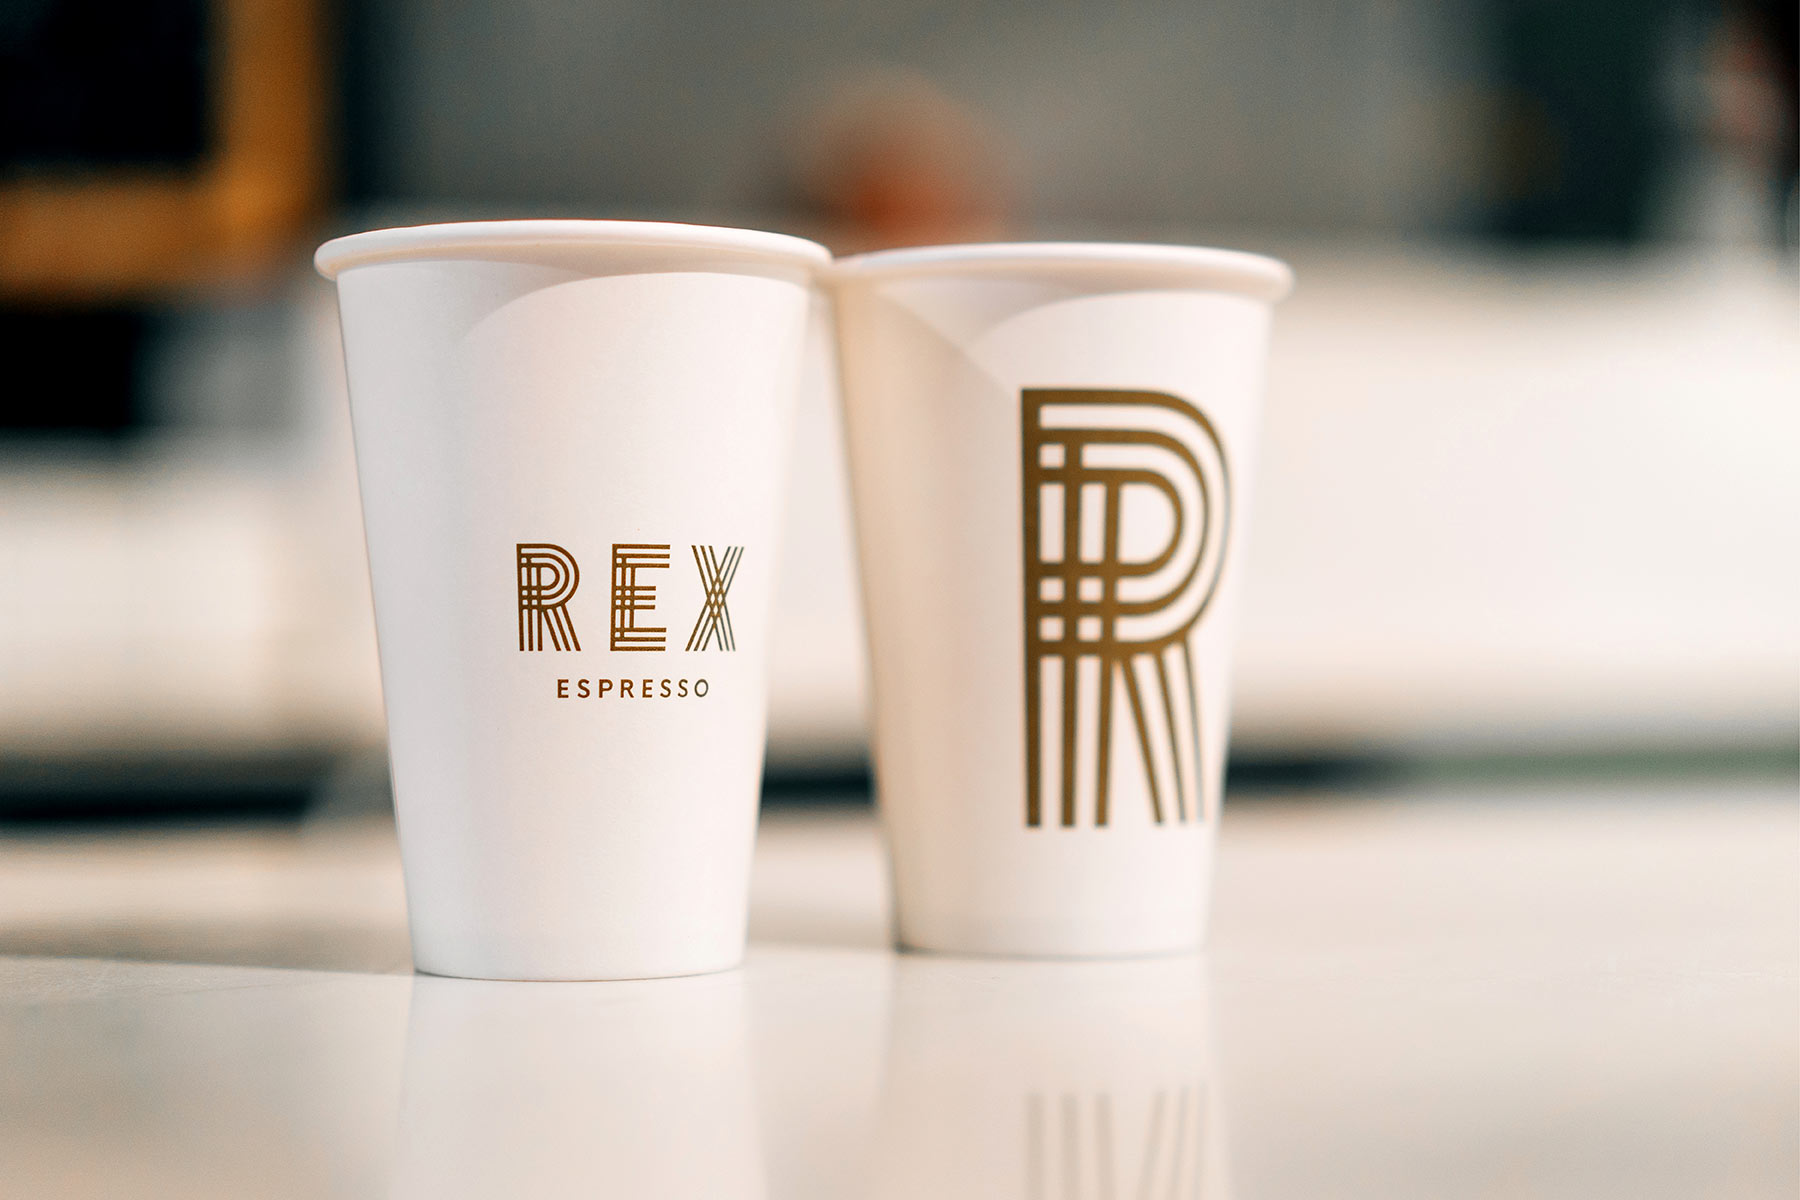 Rex Espresso branding - takeaway cups